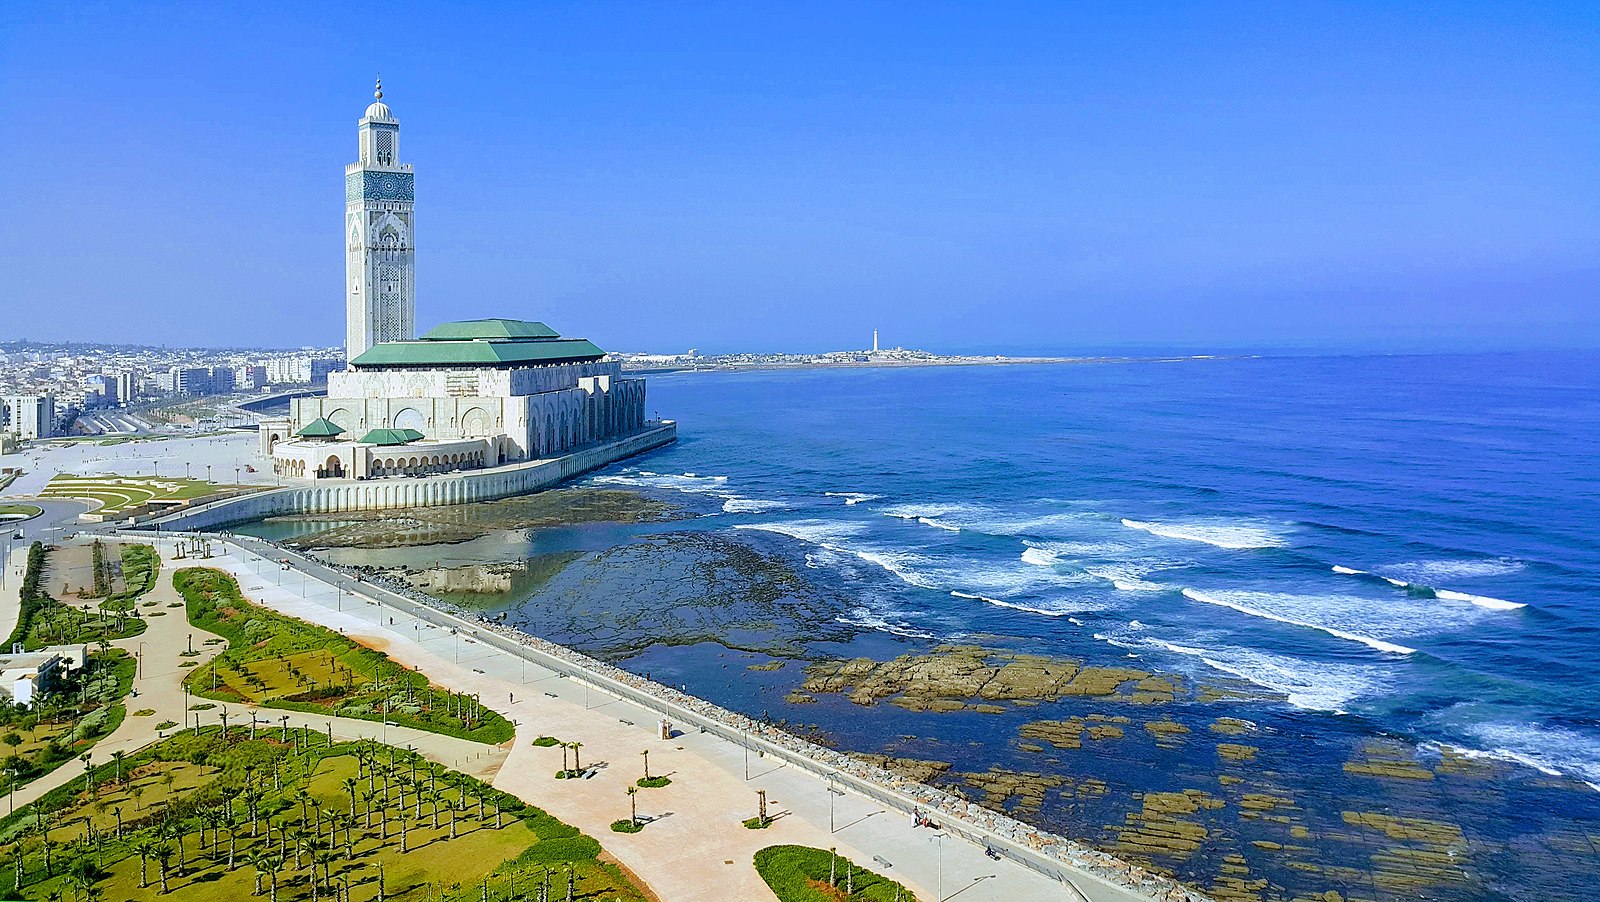 Découvrez Casablanca en Toute Liberté avec Notre Service de Location de Voiture